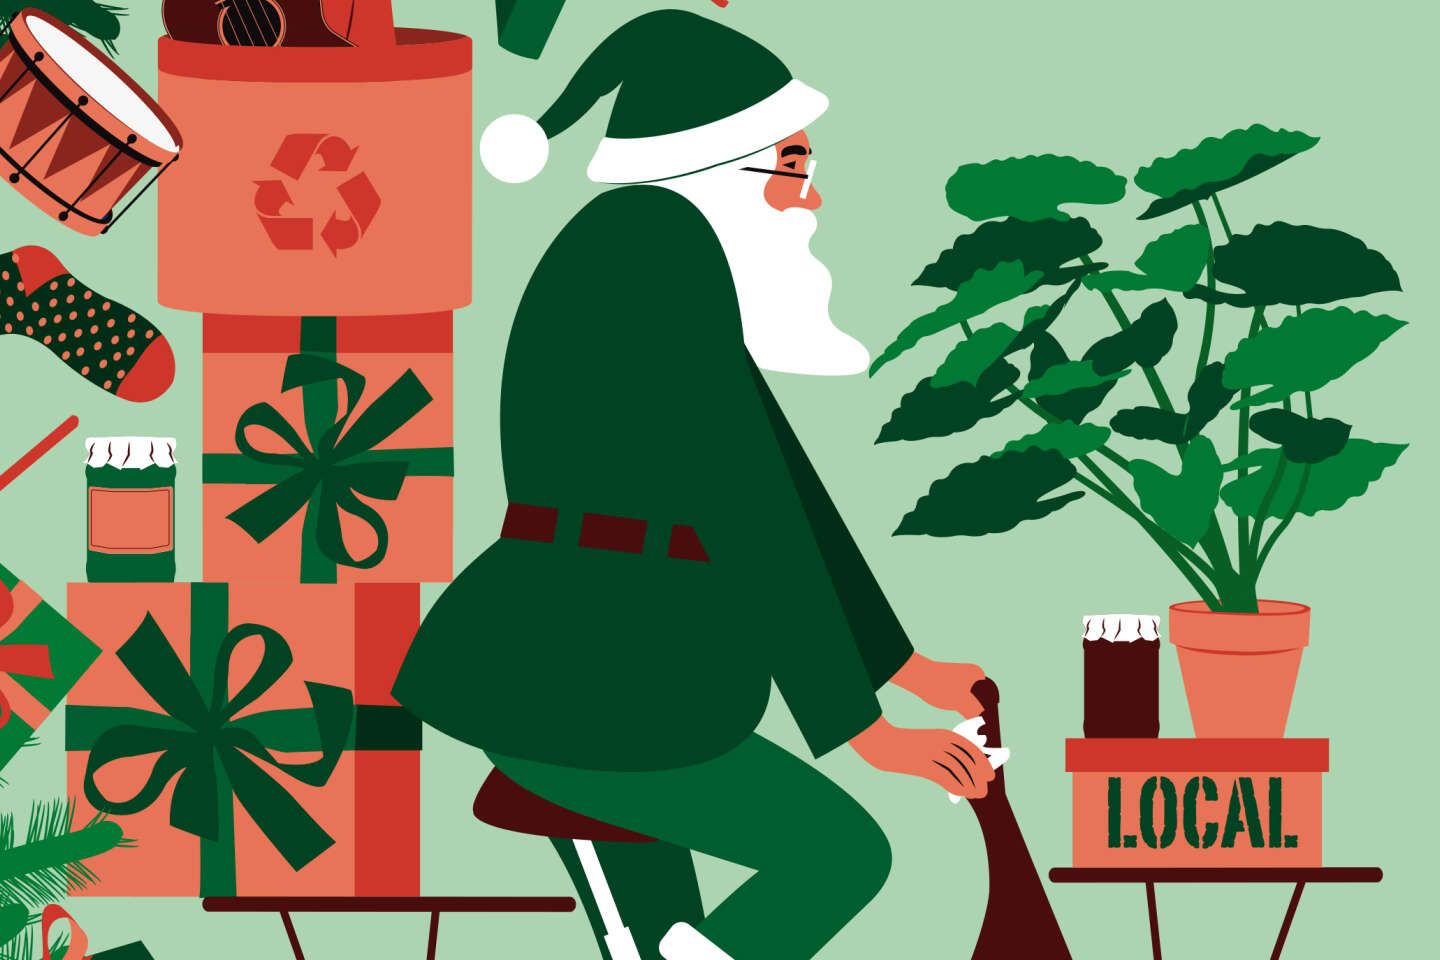 Le Père Noël, un vieillard cumulant bilan carbone exécrable et